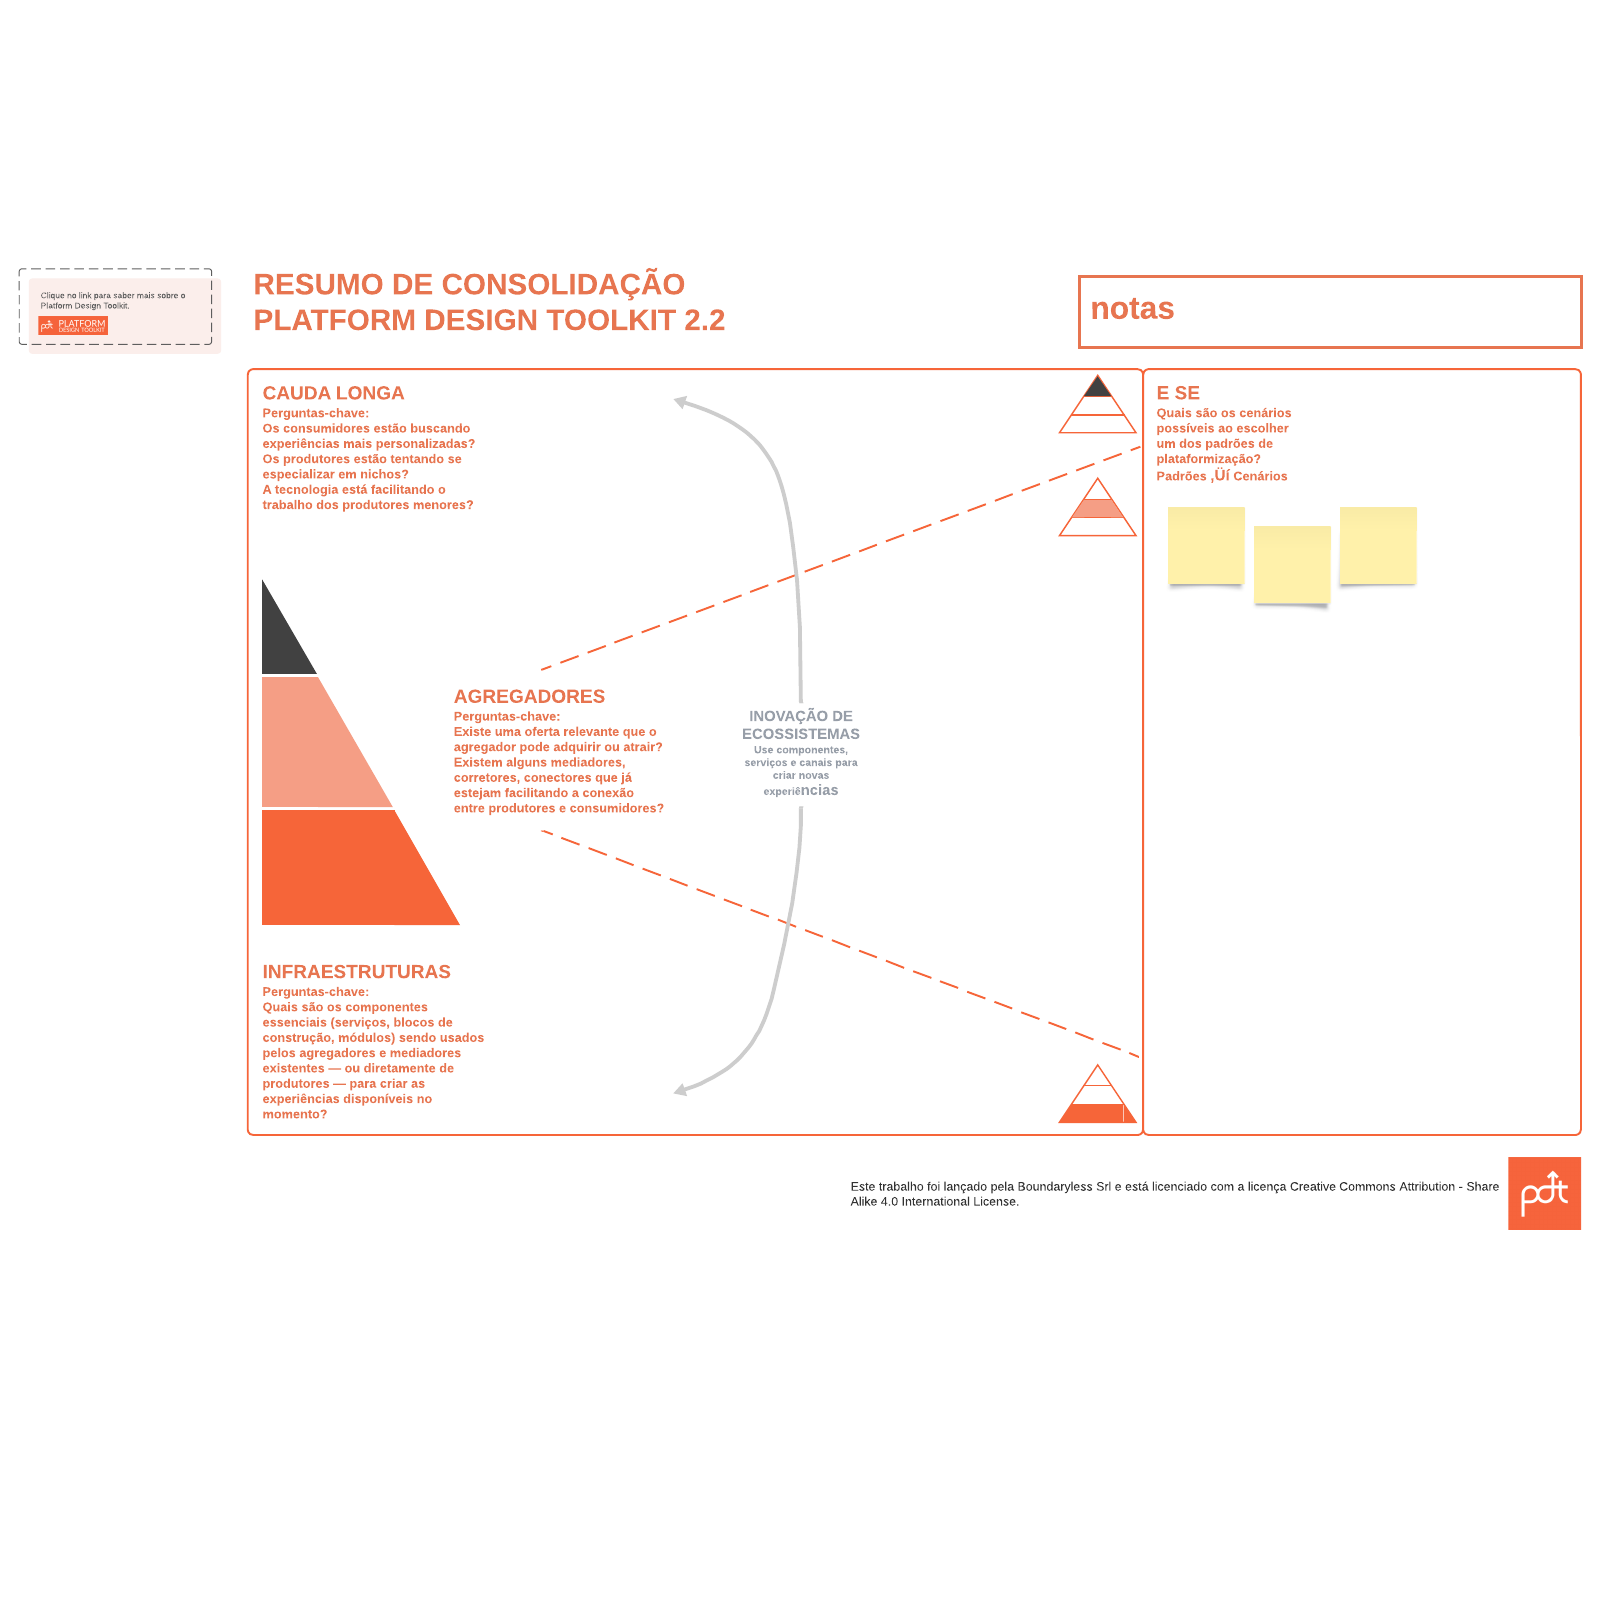 Modelo de Resumo de consolidação Platform Design Toolkit